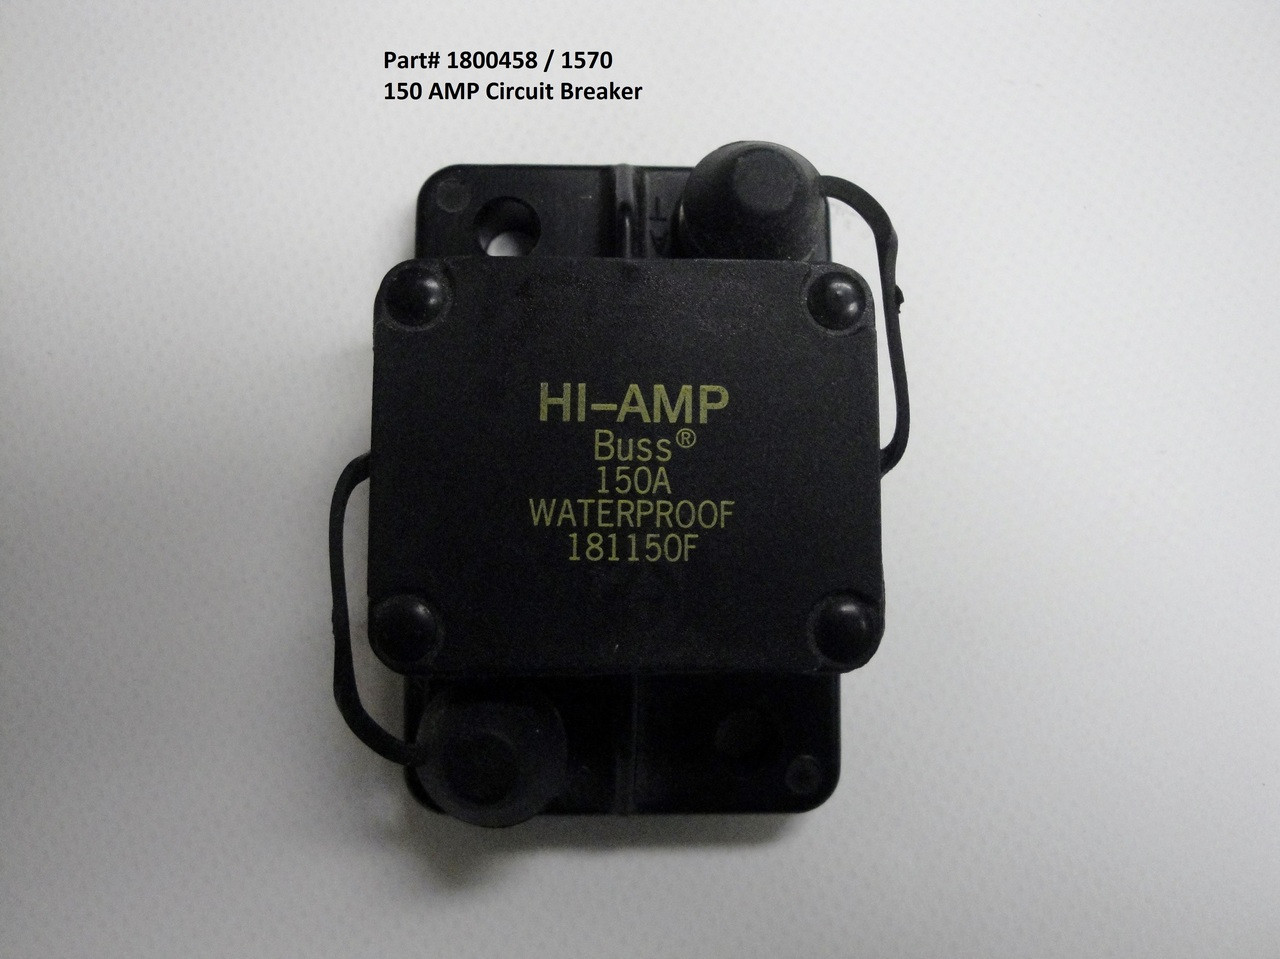 150-Amp Circuit Breaker (20-1570/1800458)